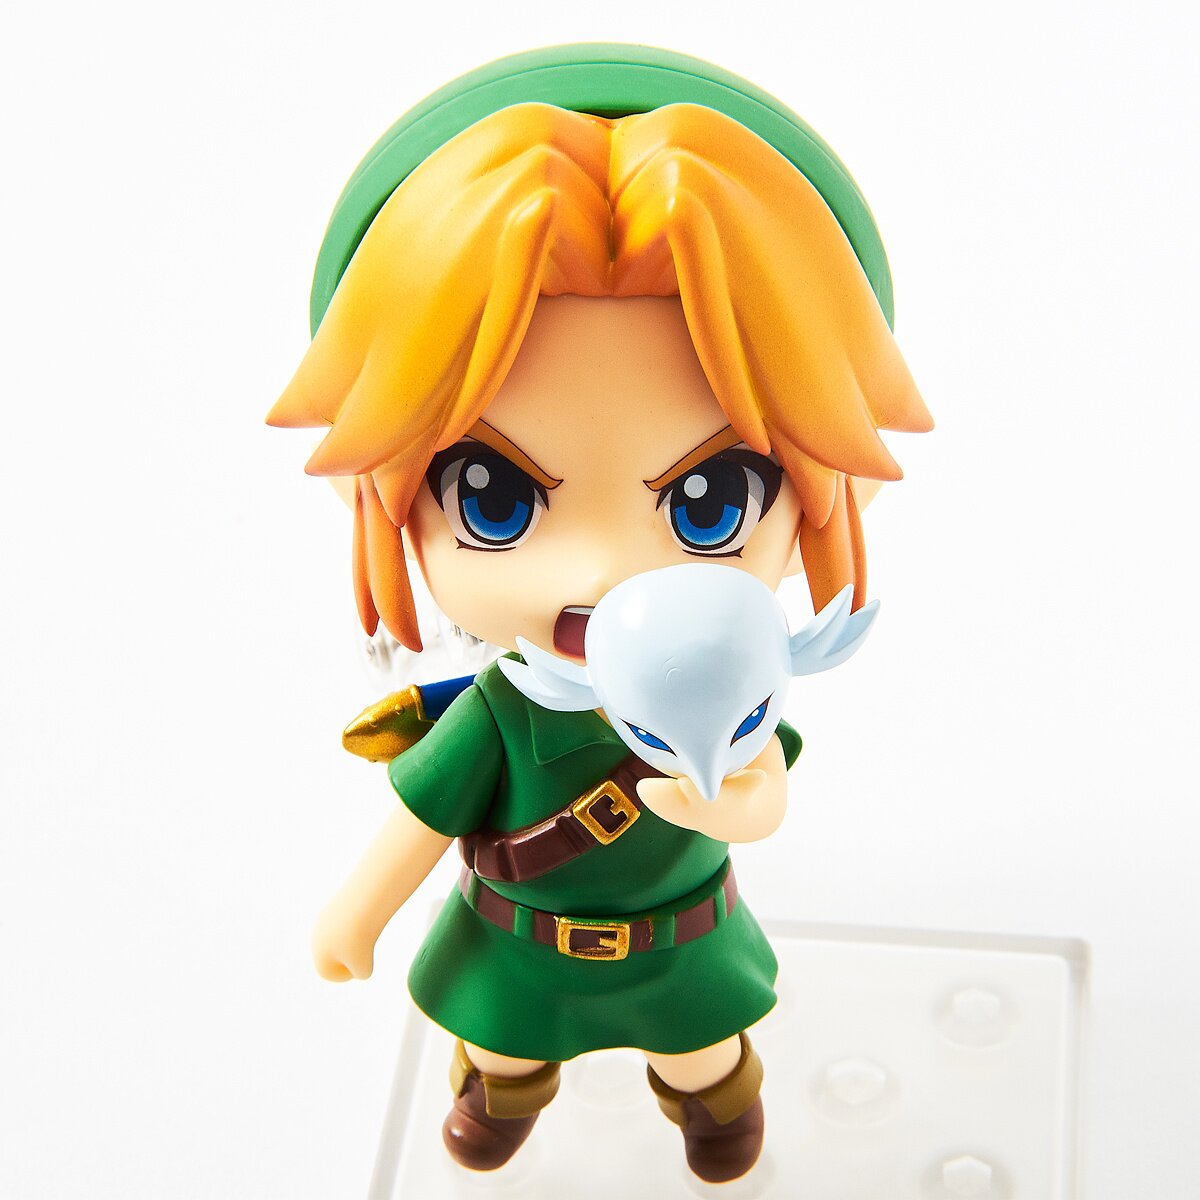 Nendoroid The Legend of Zelda Link Majora's Mask 3D Ver. Figure